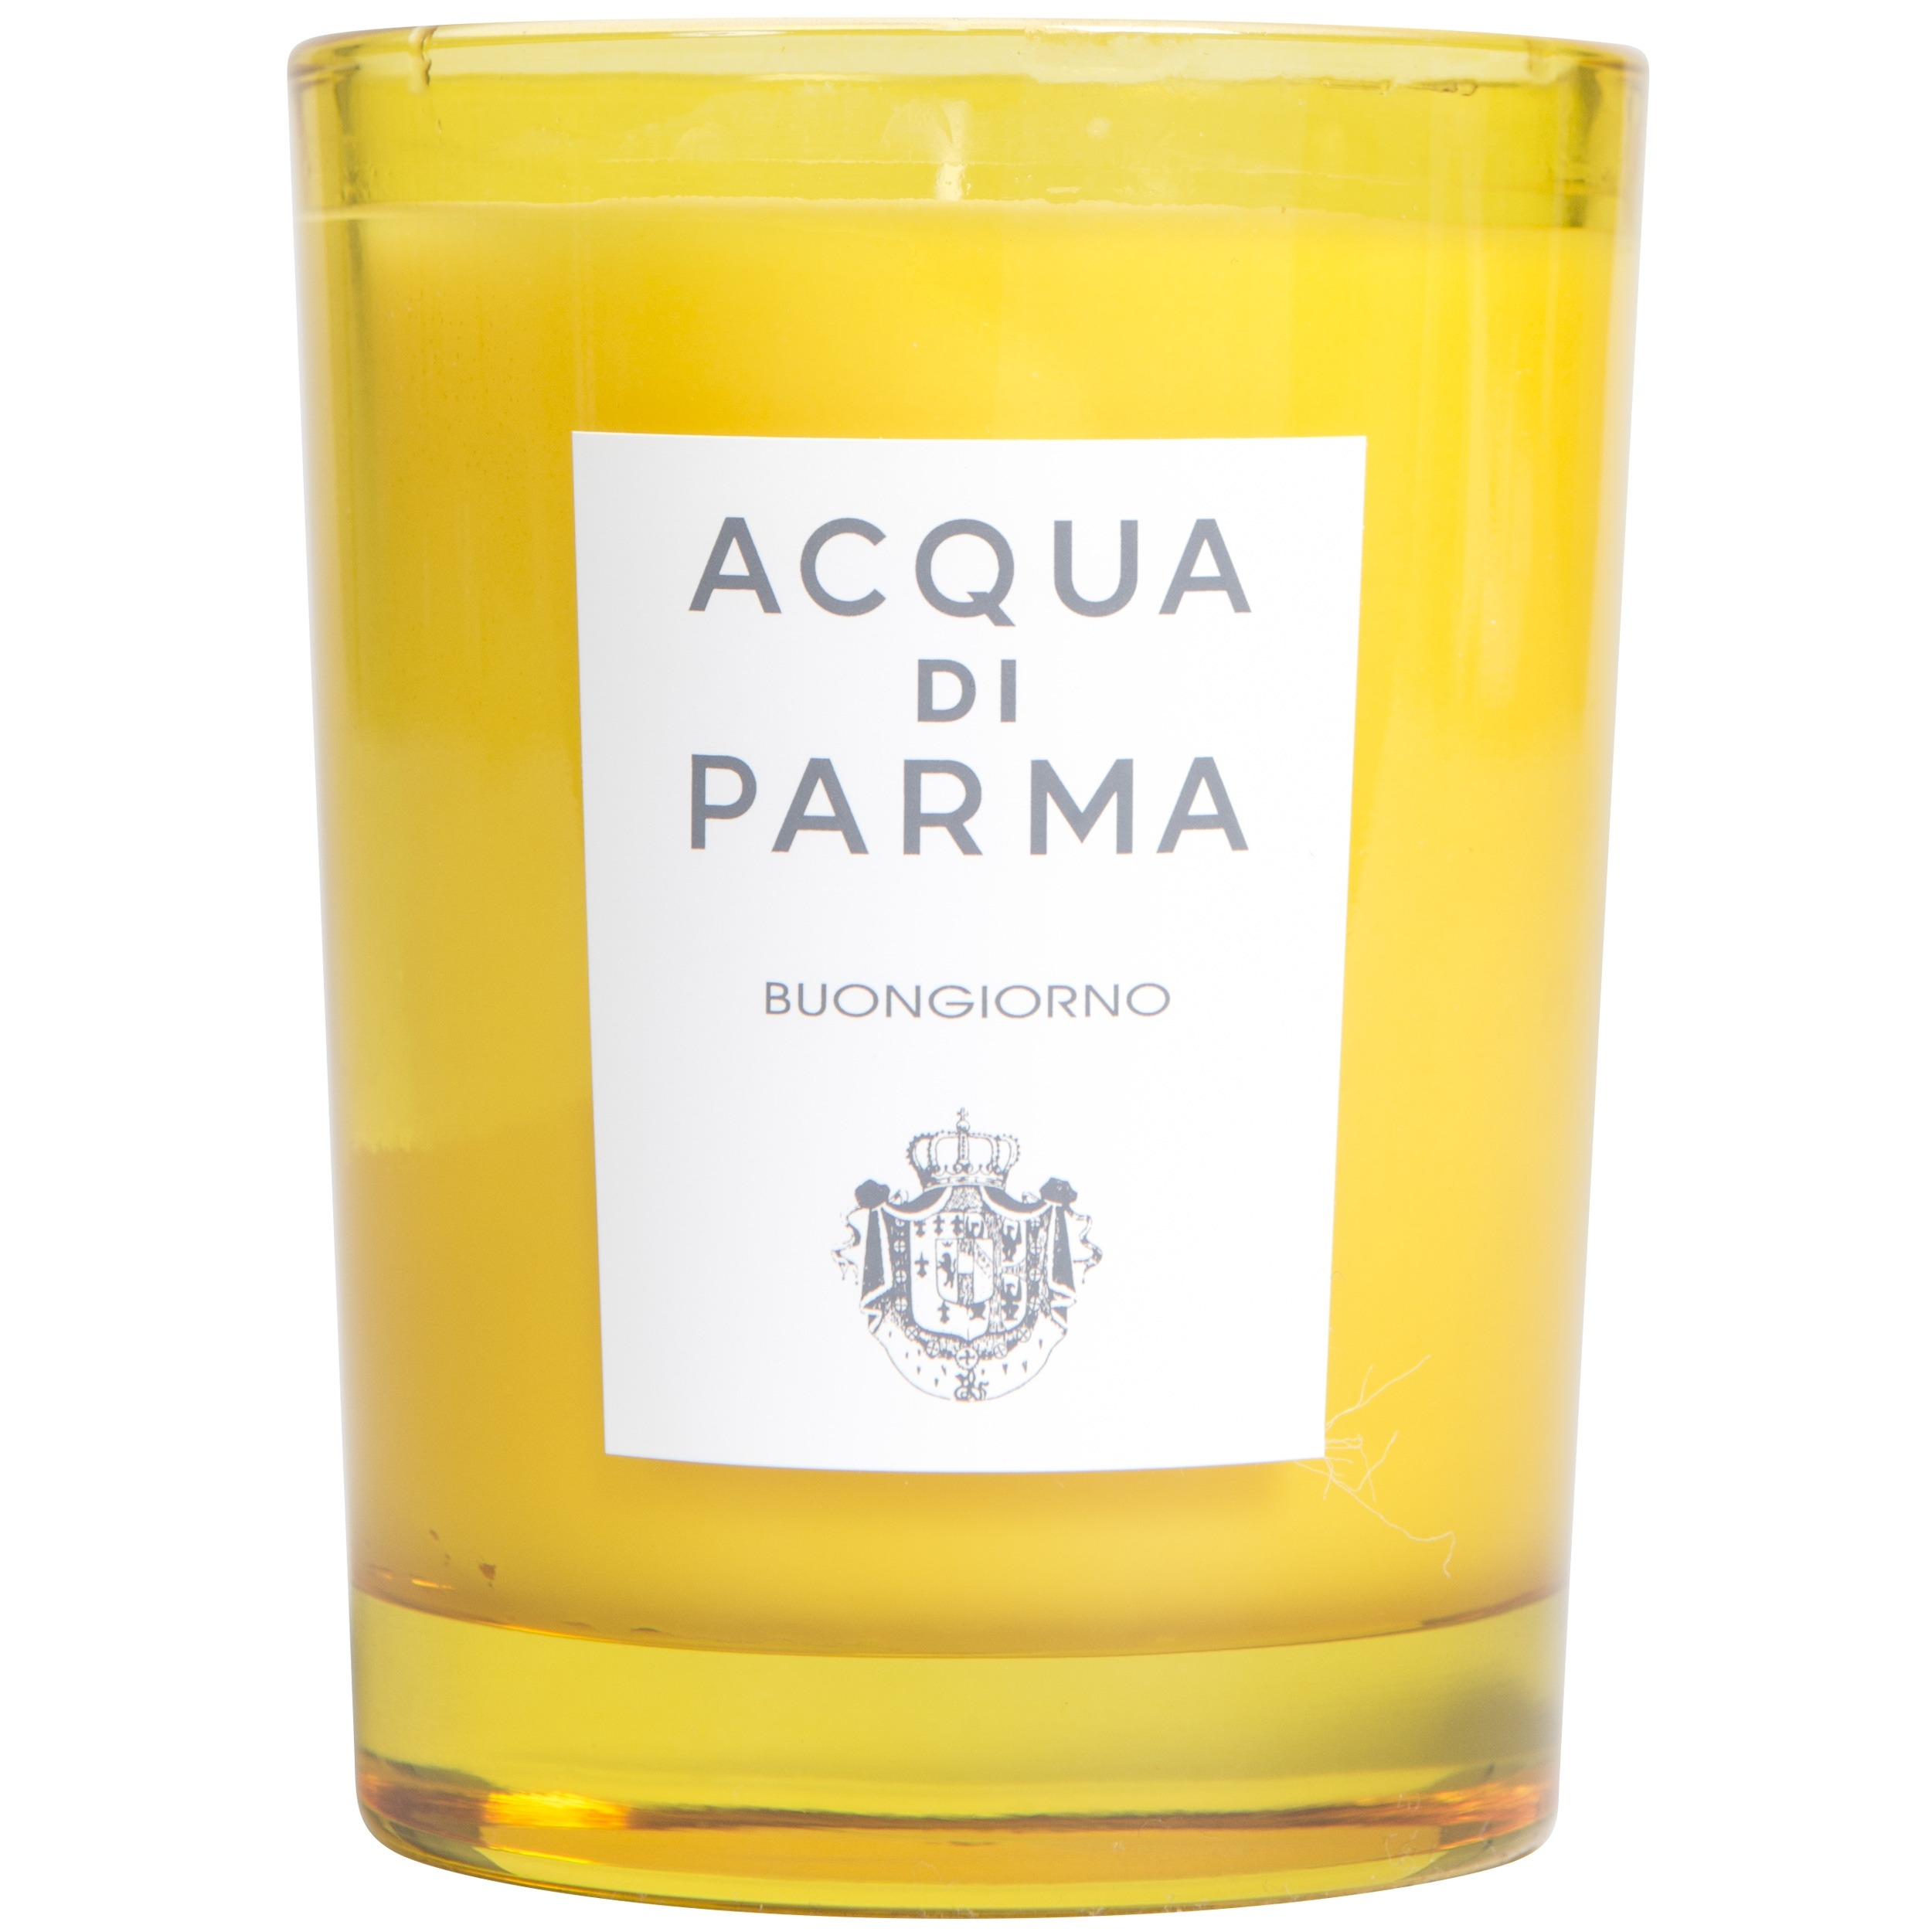 Acqua Di Parma ’Buongiorno’ Scented Candle 200g